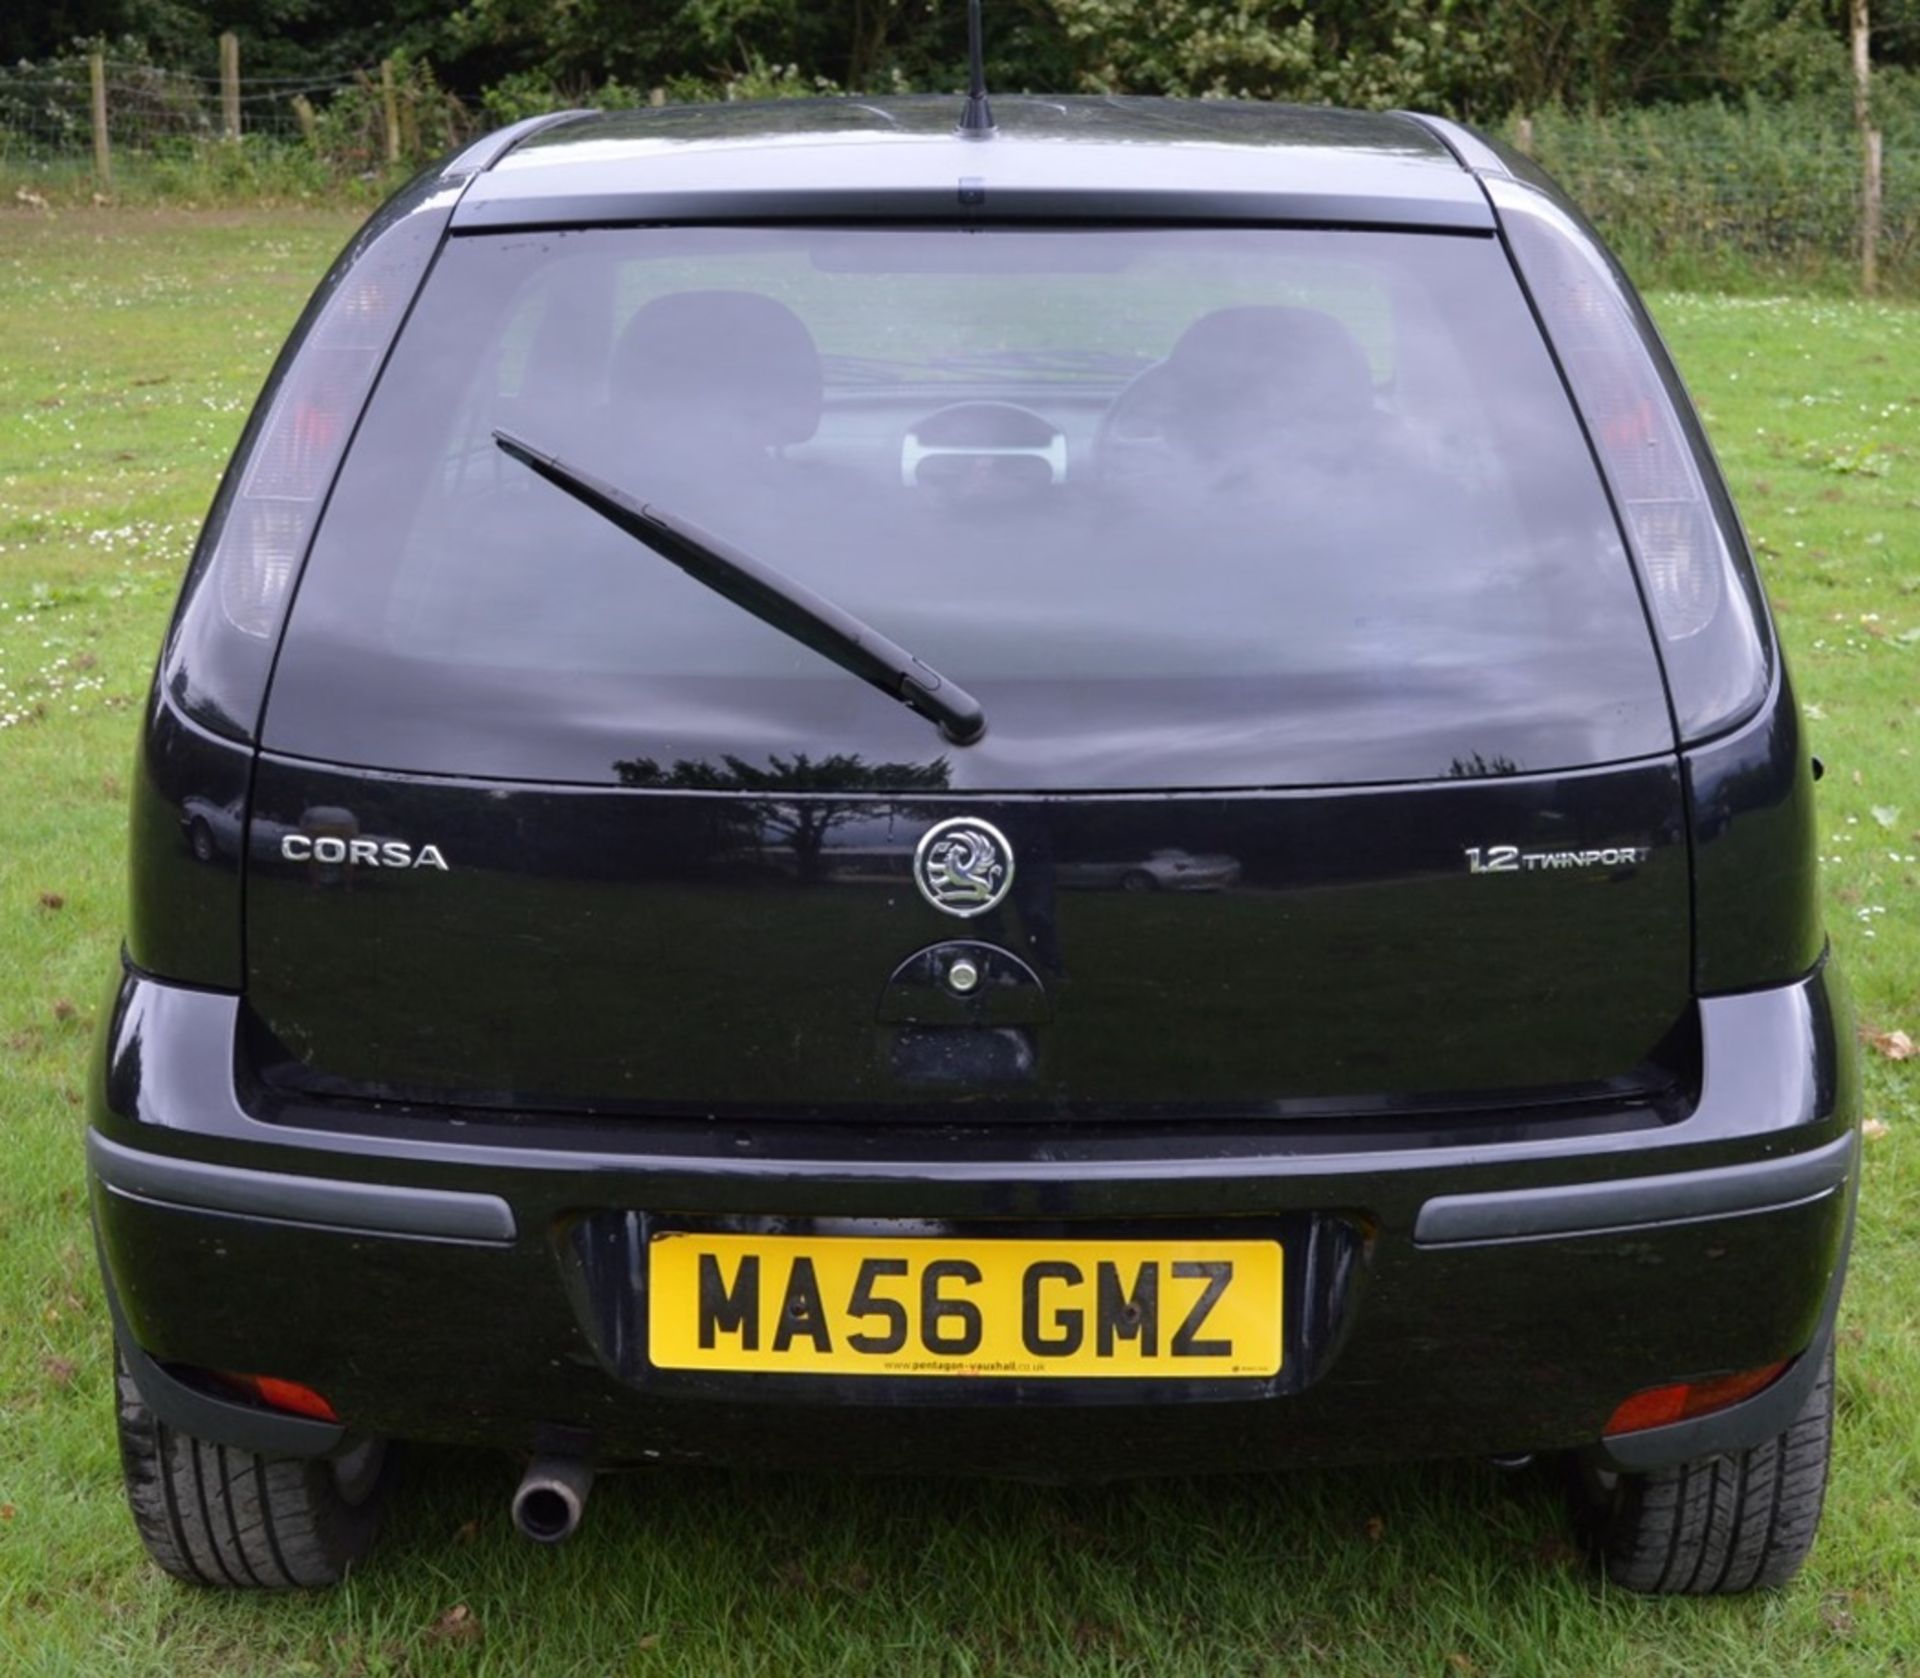 1 x Vauxhall Corsa SXI+ 3 Door Hatchback 1.2 - 2006 56 Plate - 78,000 Miles - MOT June 2018 - Image 4 of 36